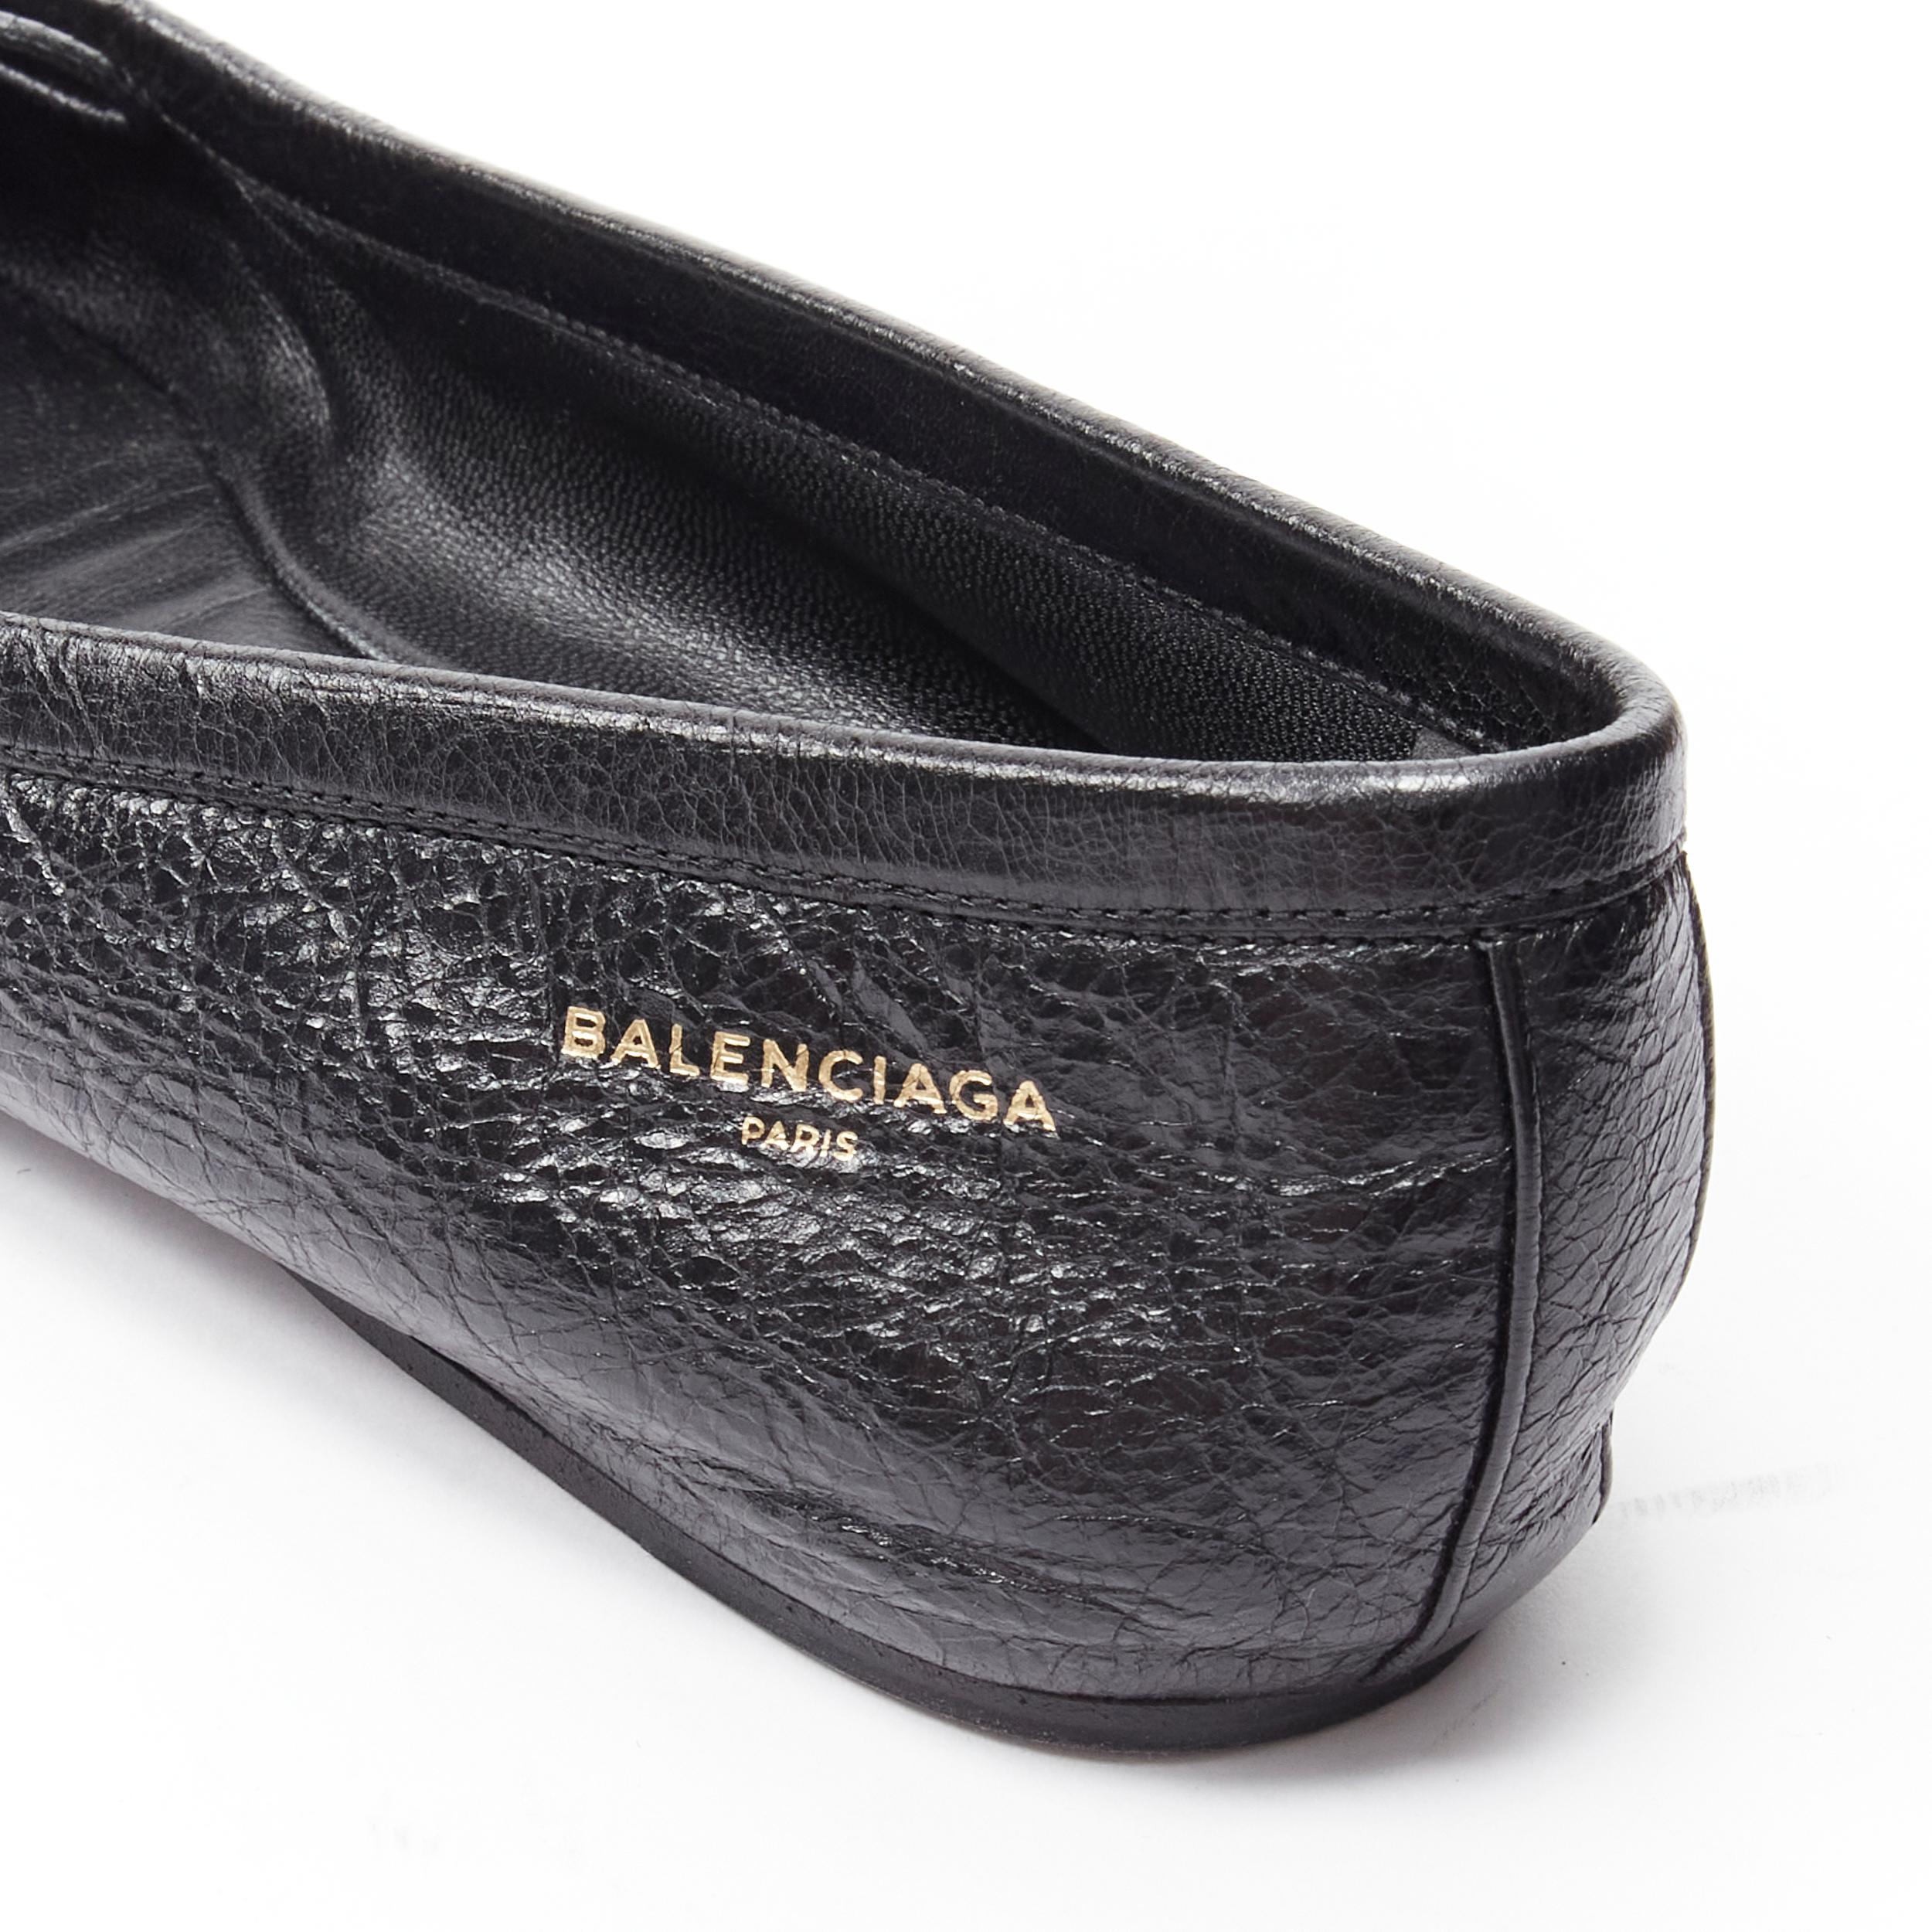 BALENCIAGA Demna black Arena crinkled leather square toe ballerina flats EU37 1